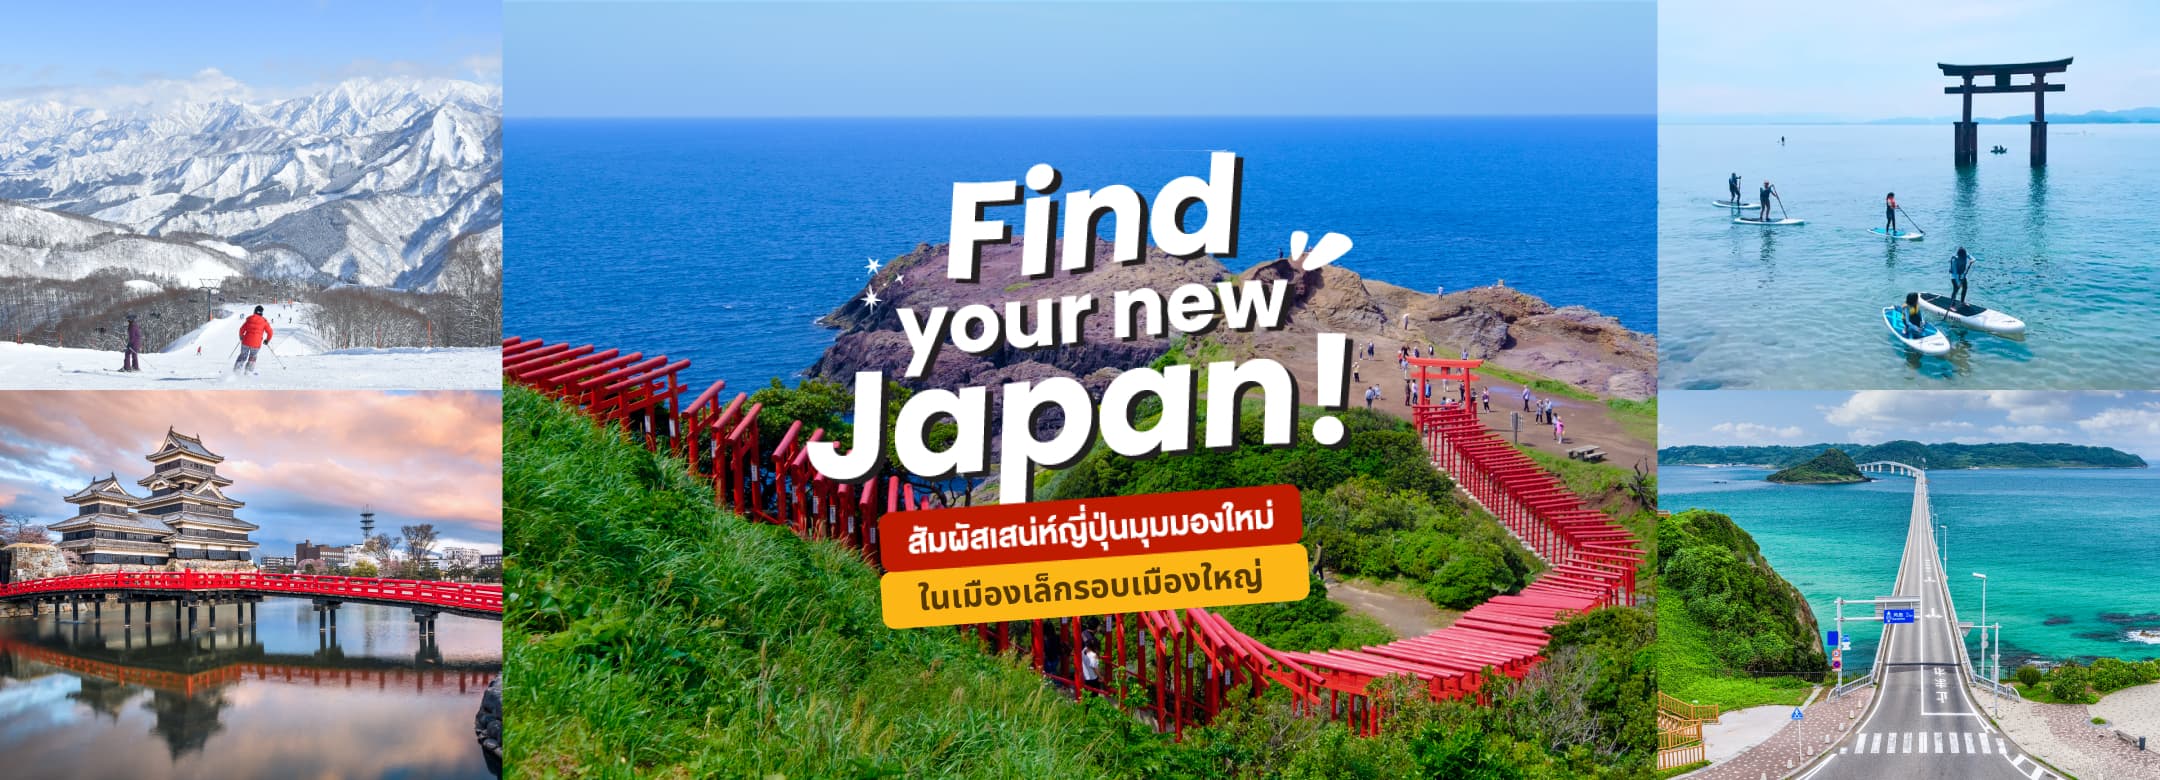 Find your new Japan! สัมผัสเสน่ห์ญี่ปุ่นมุมใหม่ ในเมืองเล็ก รอบเมืองใหญ่